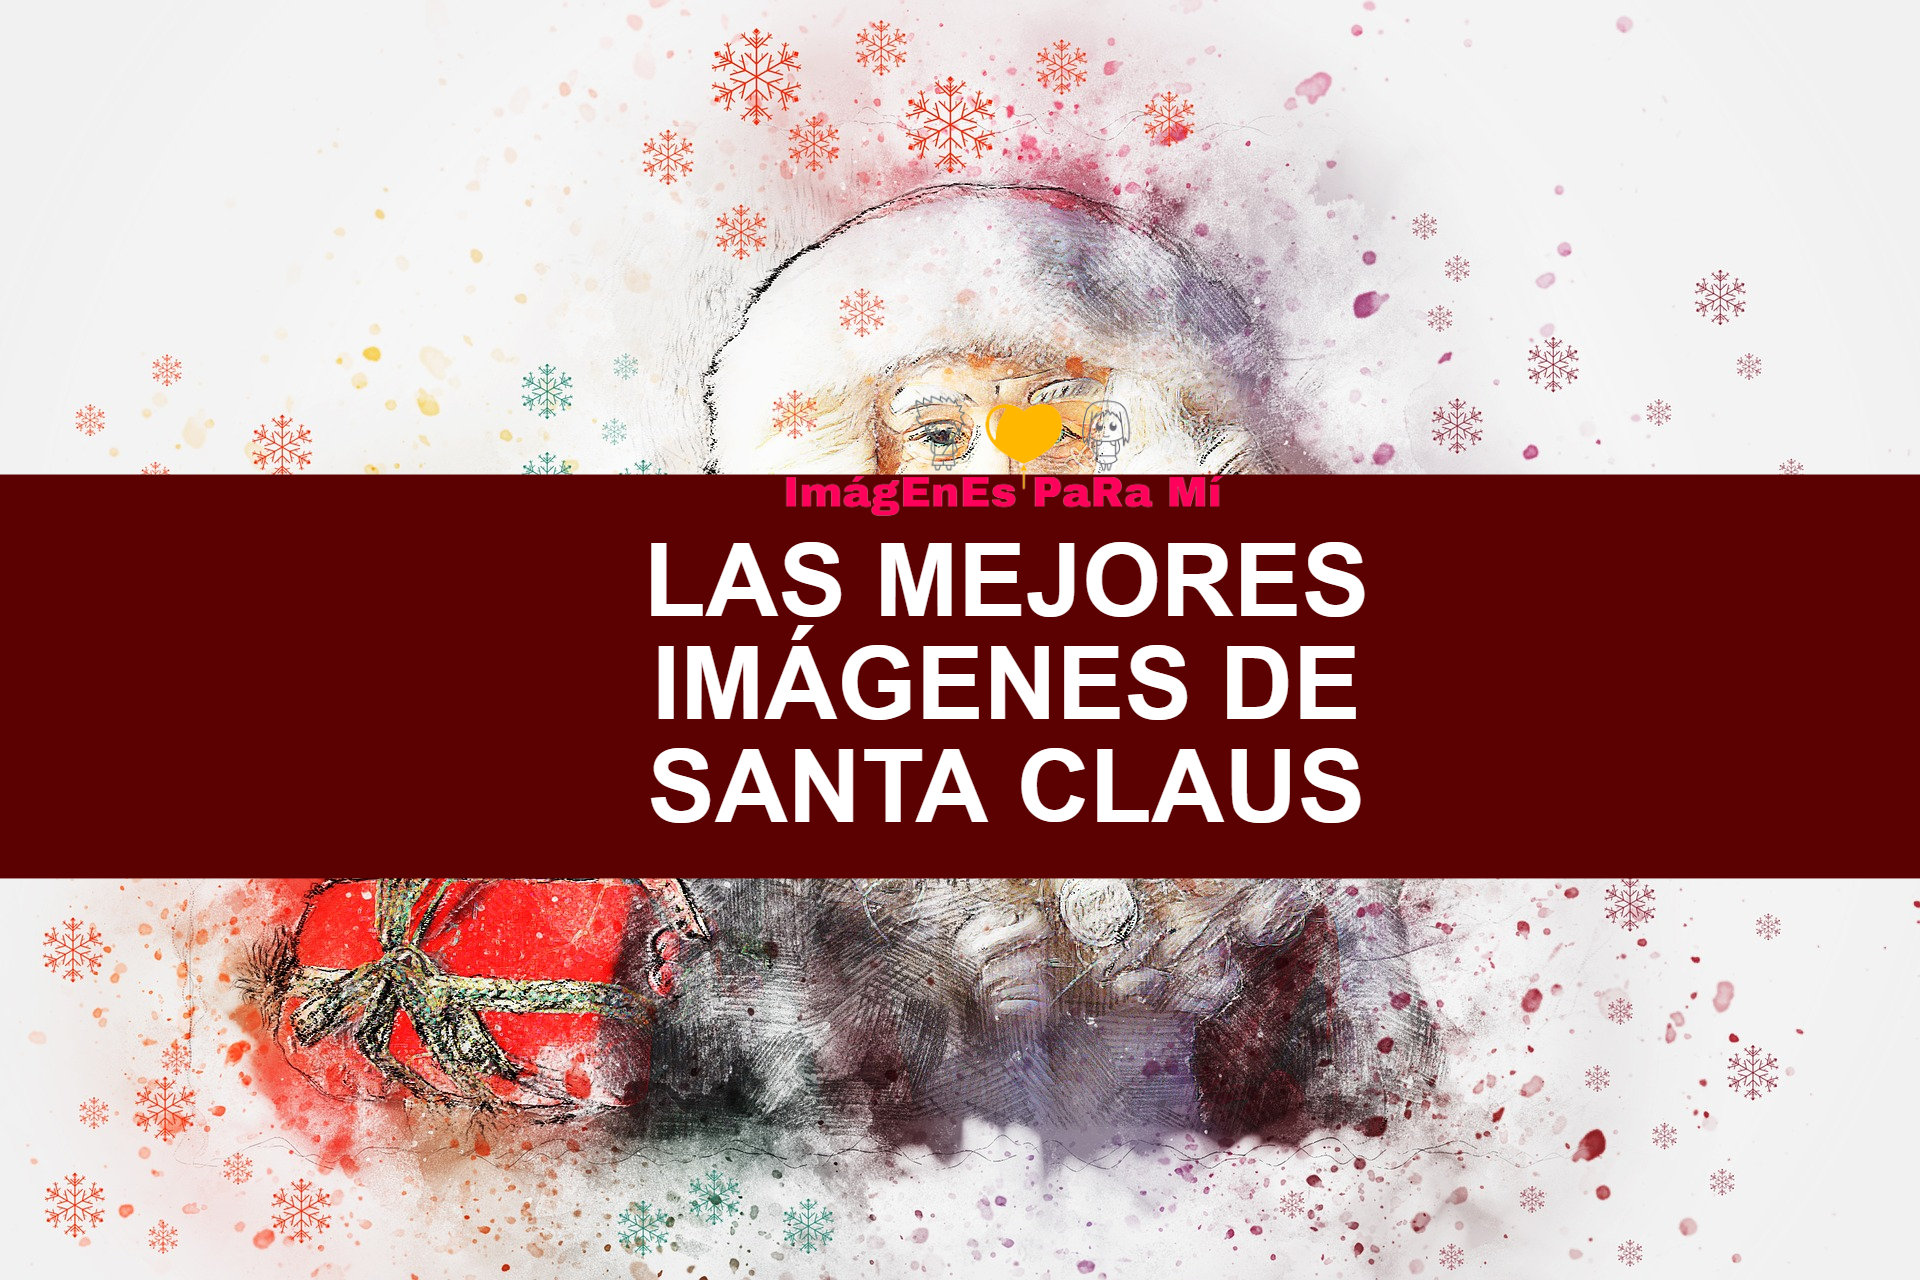 En este momento estás viendo Las Mejores Imágenes de Santa Claus para compartir con tus familiares y amigos